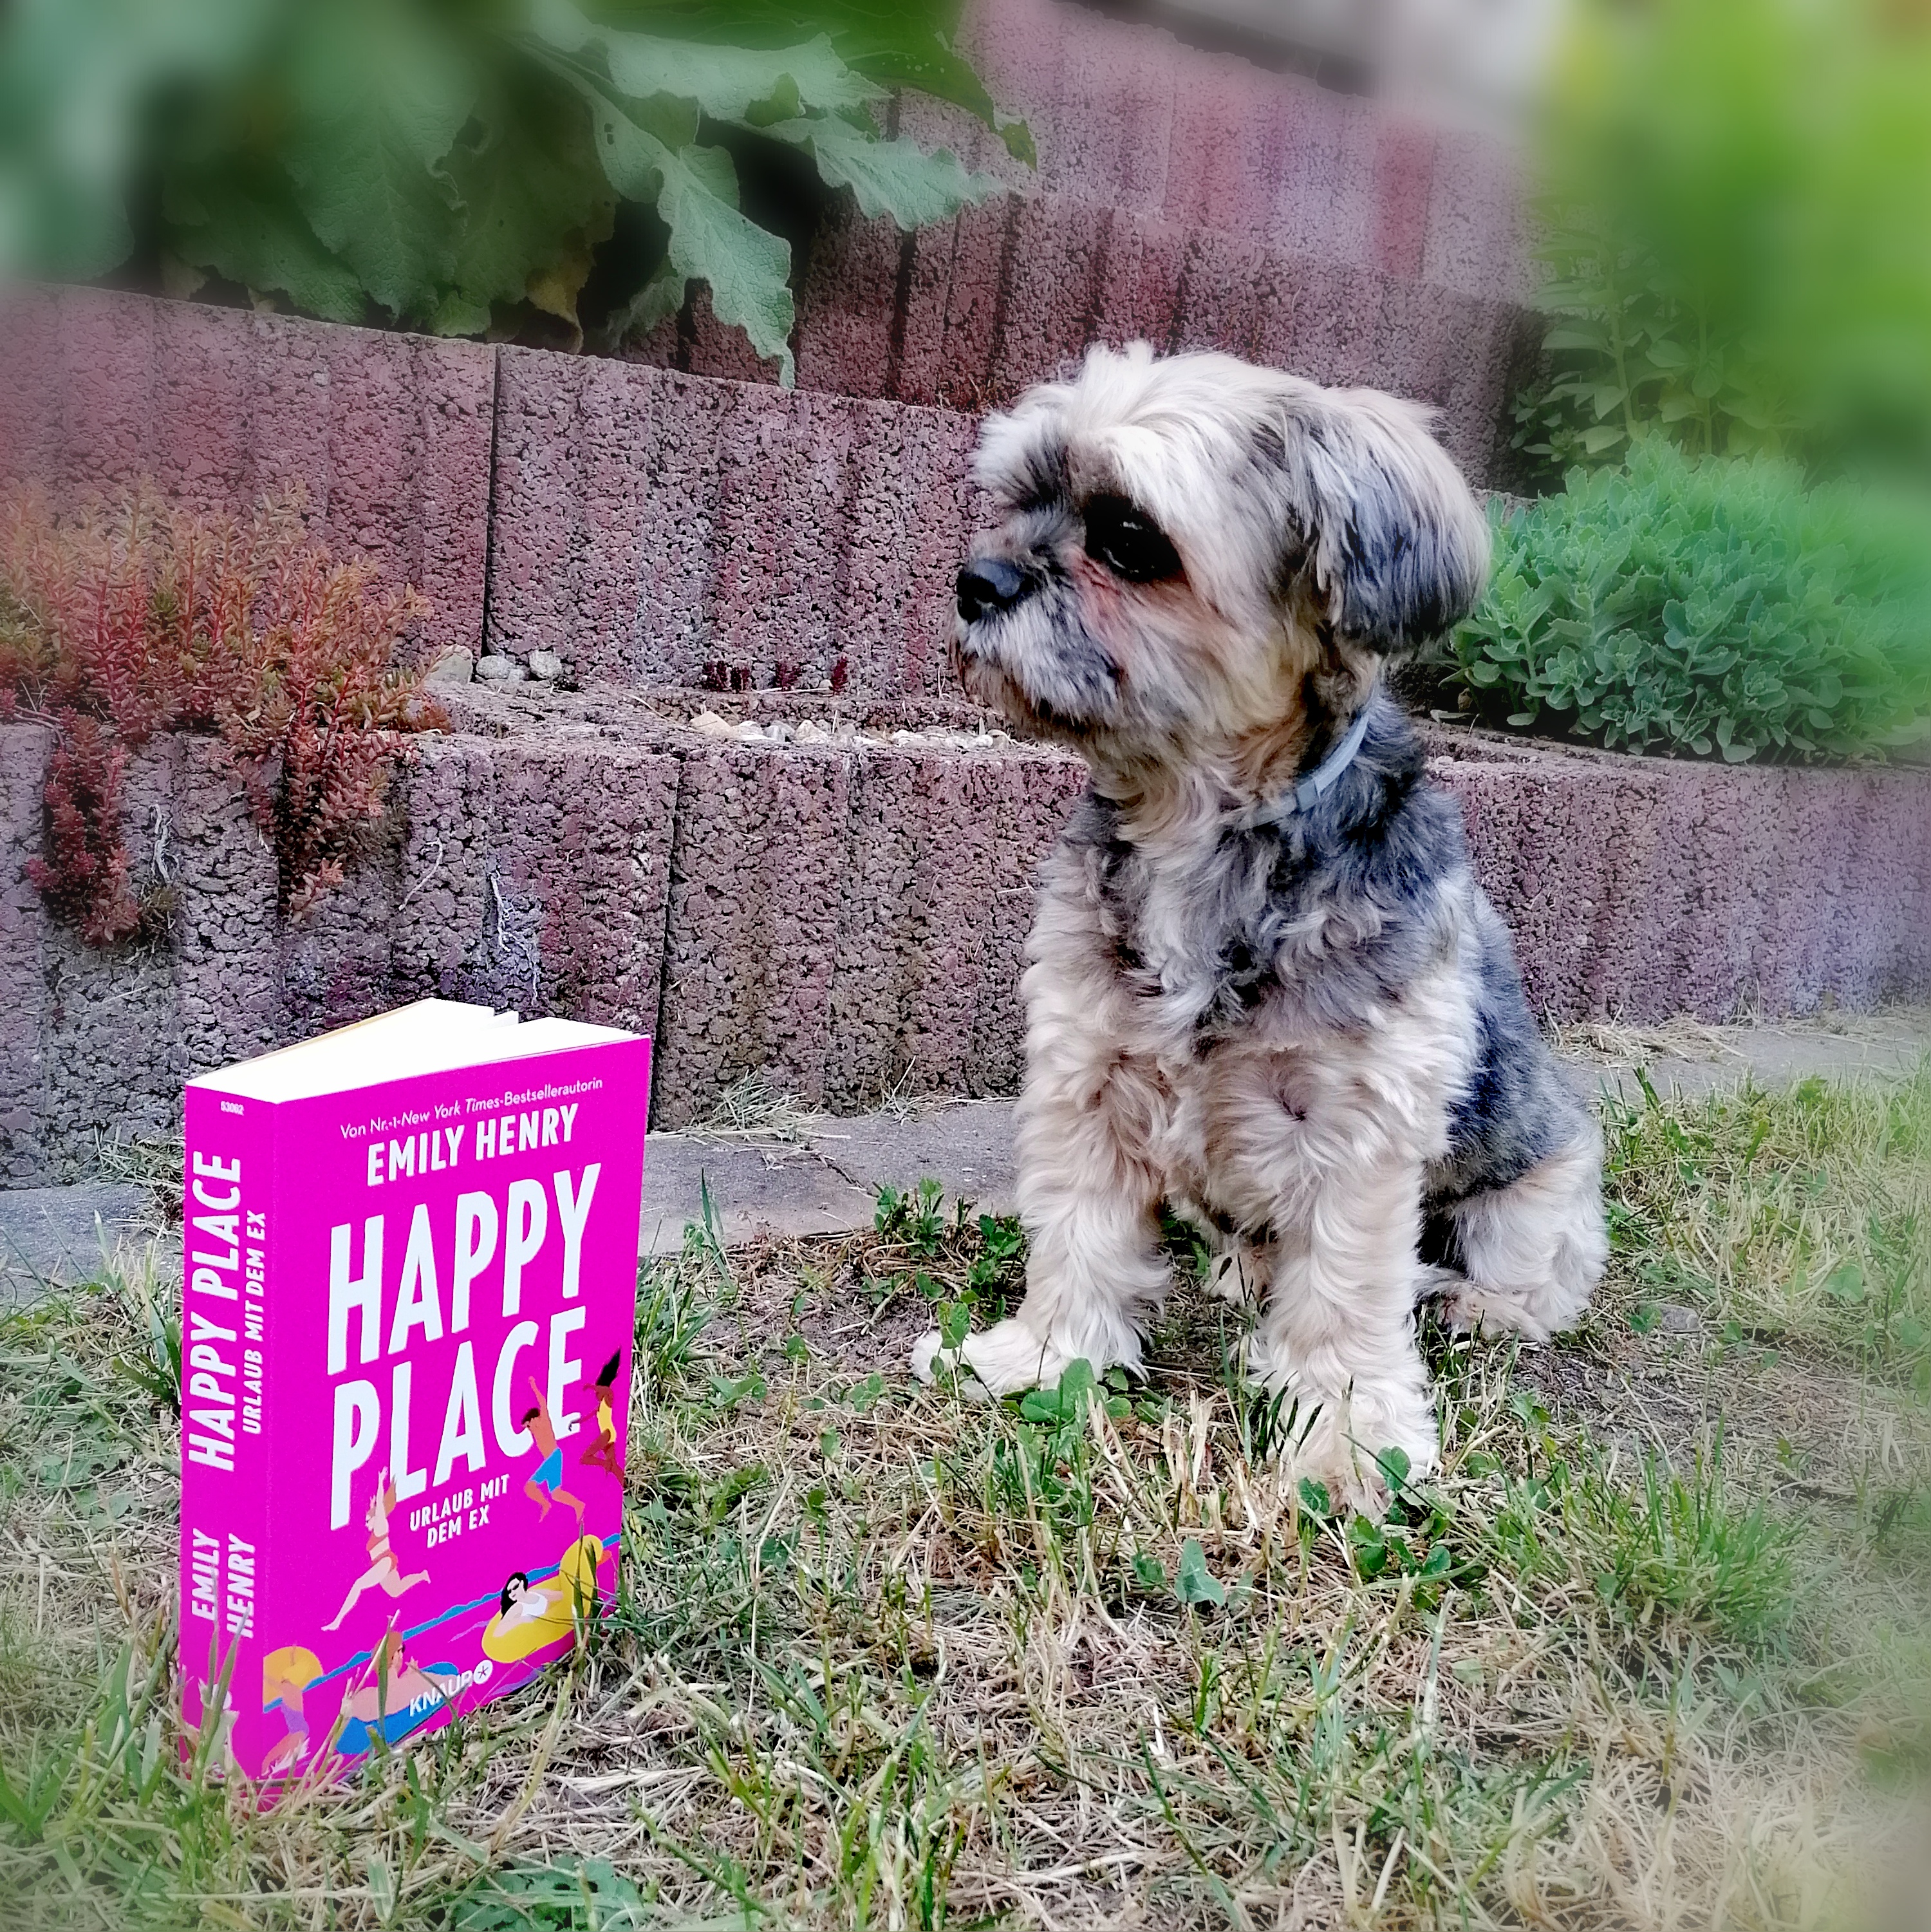 Blick ins Buch - "Happy Place - Urlaub mit dem Ex" von Emily Henry - RomCom? Da steckt mehr drin!